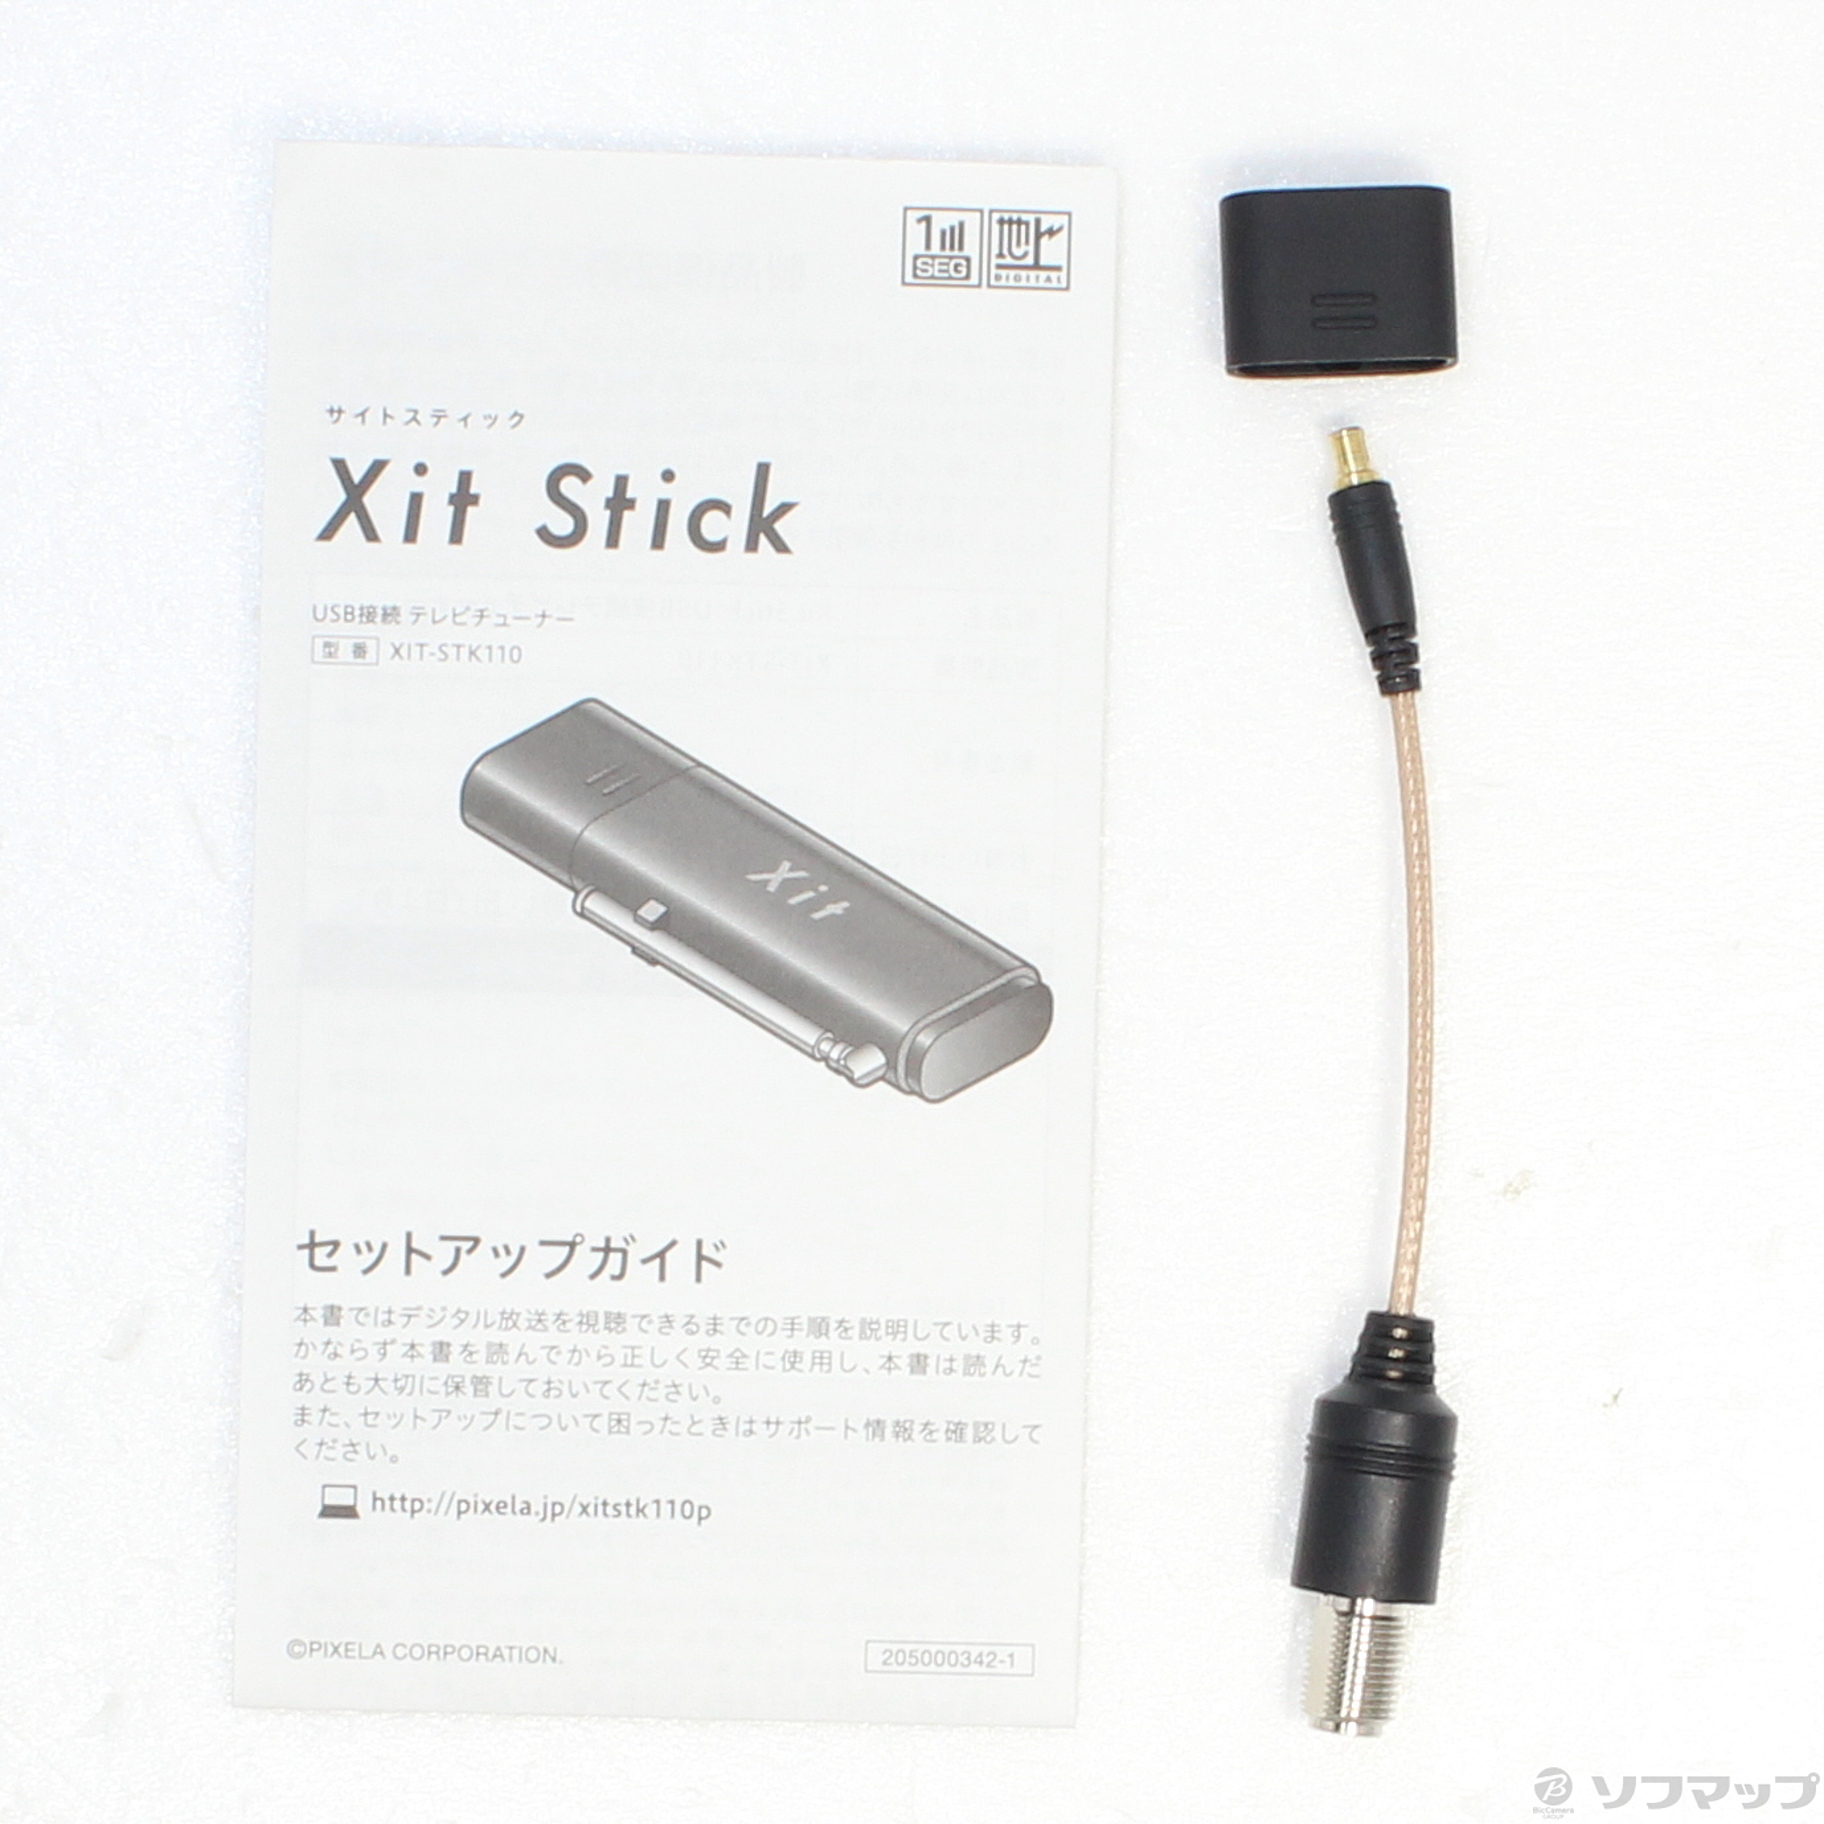 ピクセラXitStick XIT-STK210 iOS用 テレビチューナー 新作 大人気